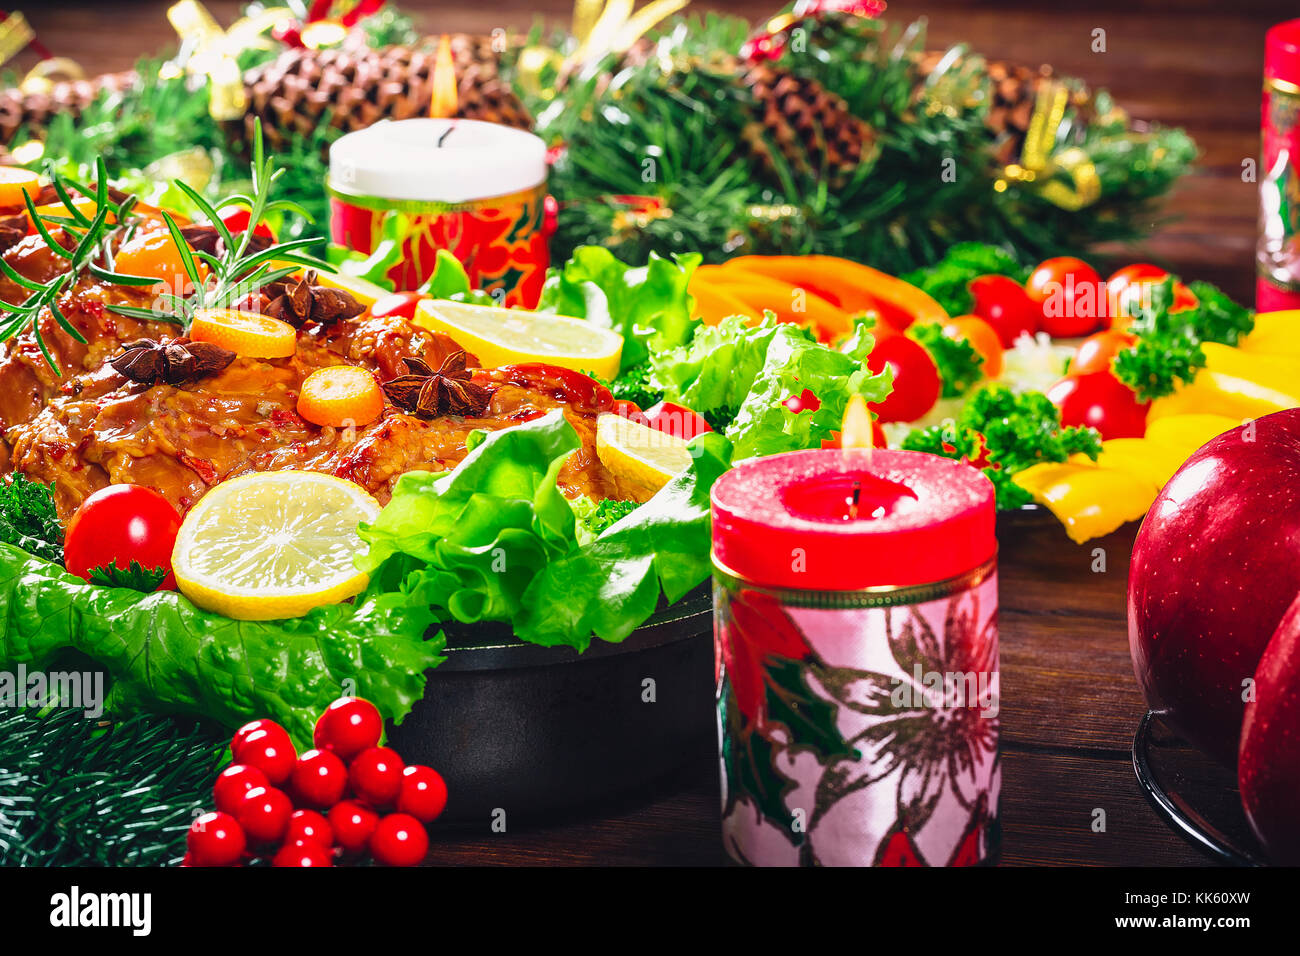 Tavola di natale a cena con arrosti di carni rosse decorate in stile natalizio. sfondo ringraziamento. Il concetto di una vacanza con la famiglia, bella delic Foto Stock